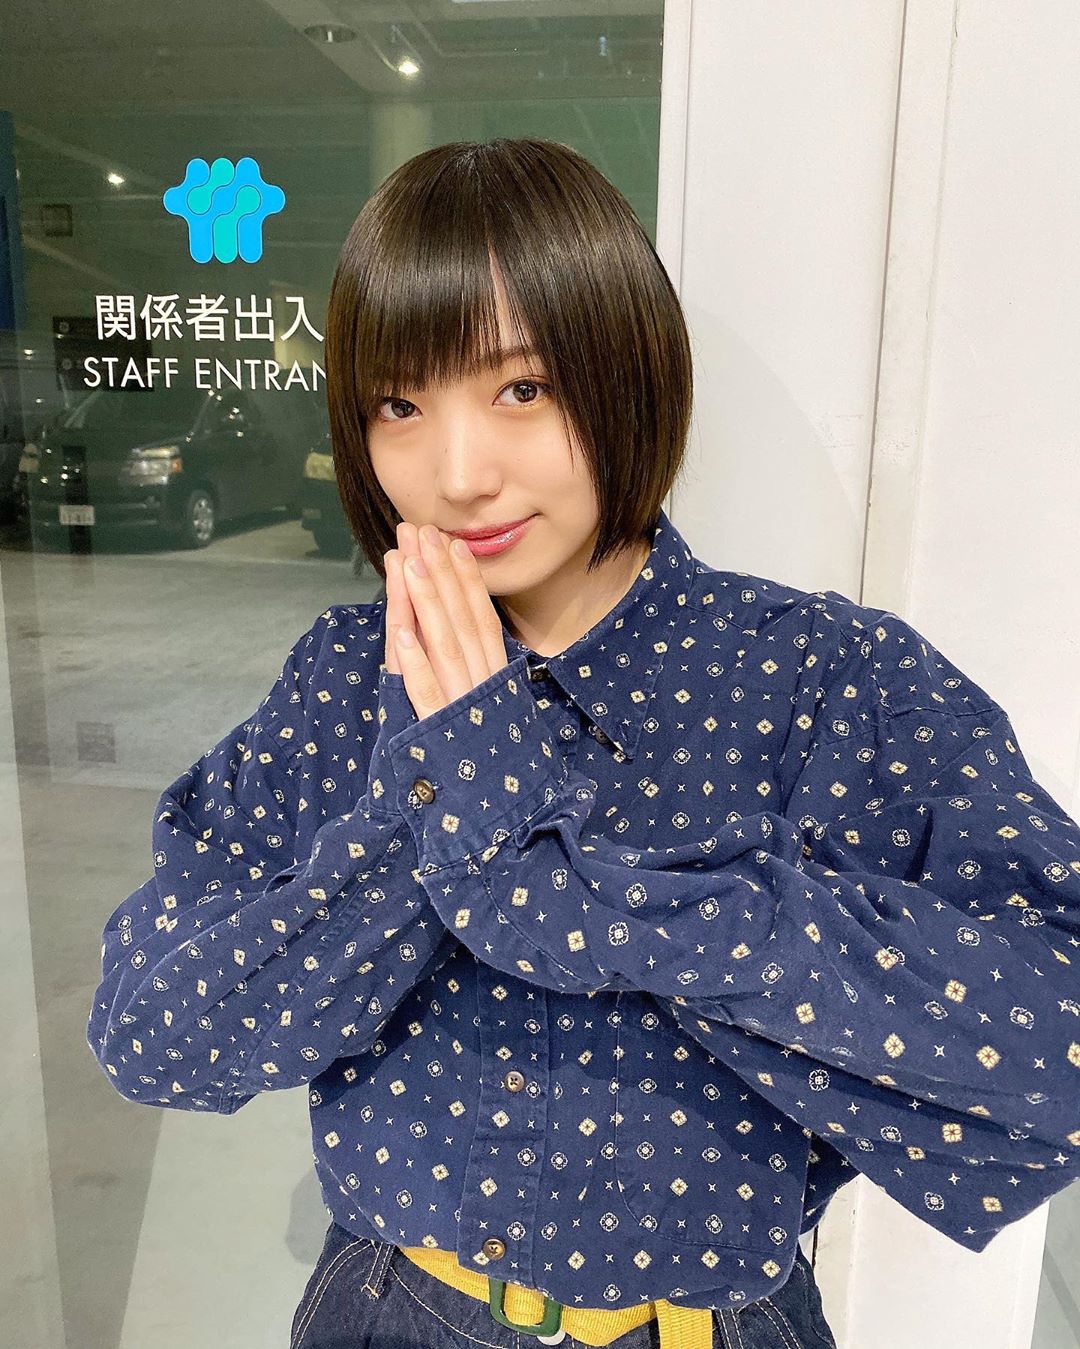 太田夢莉はNMB48の第3期メンバー